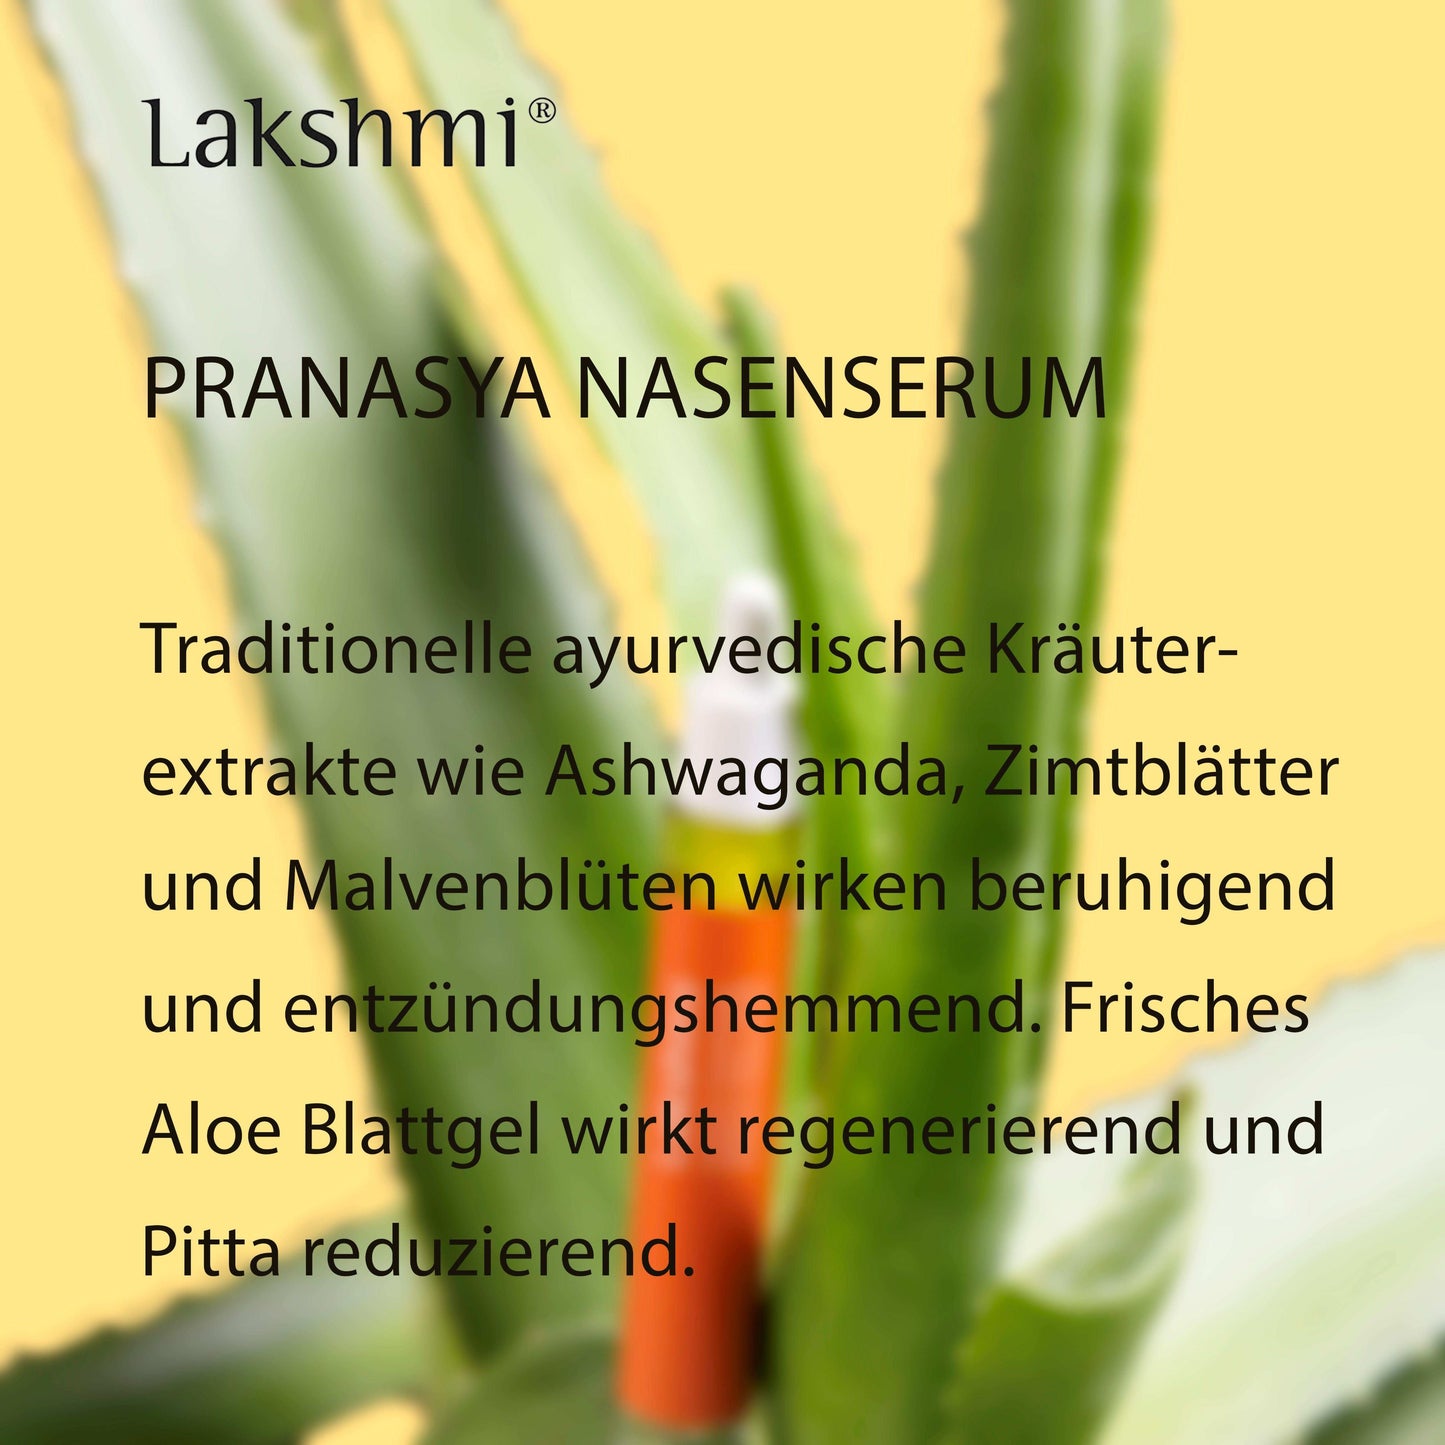 Lakshmi Pranasya Serum für Nase und Nebenhöhlen